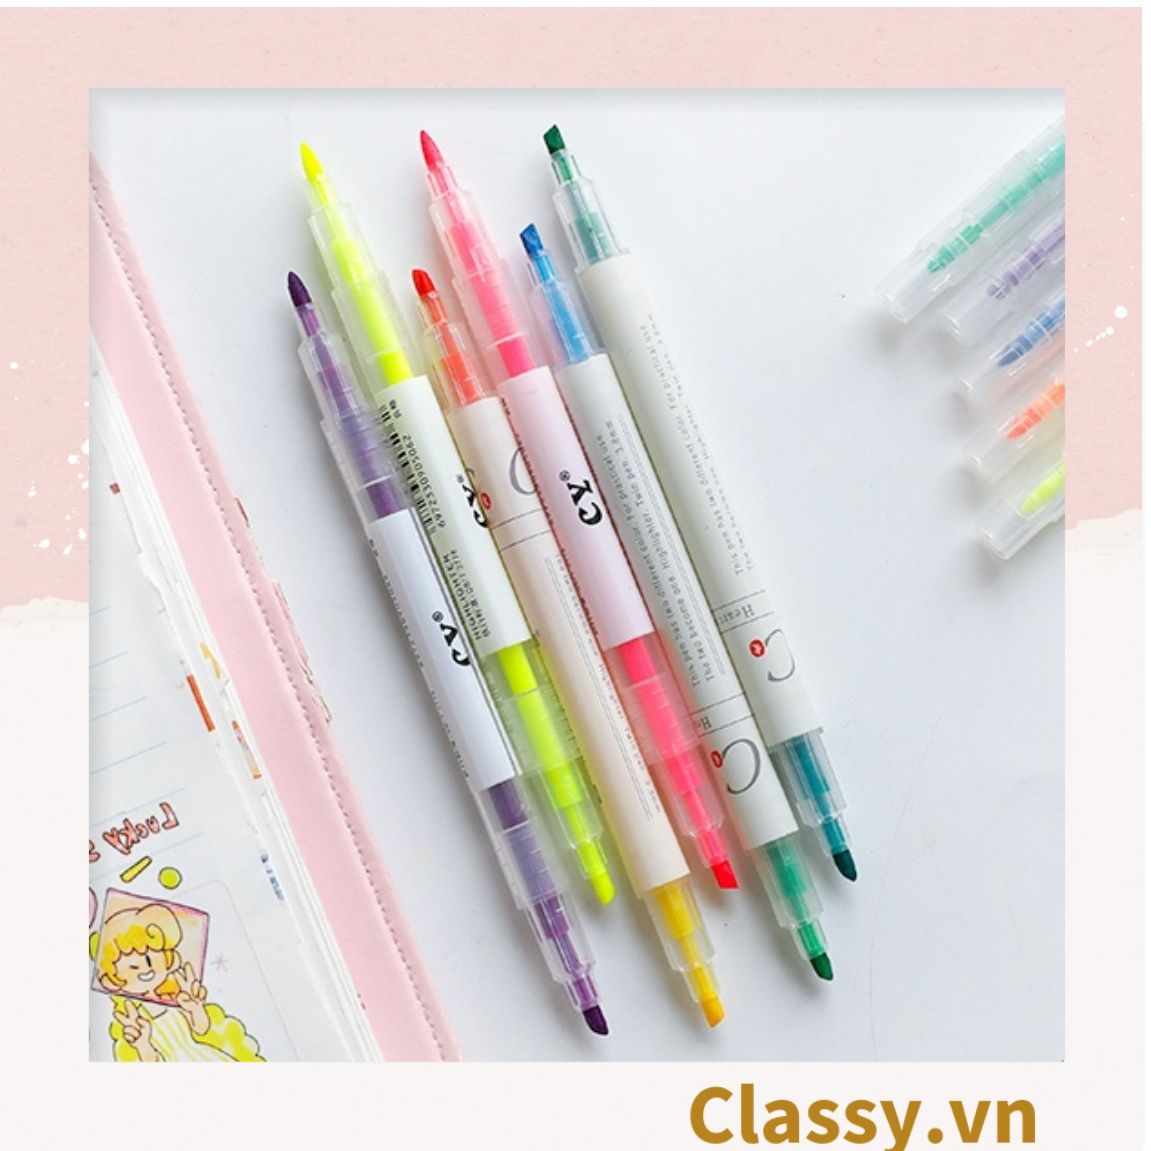  Bộ 6 màu Bút màu highlighter pastel, hỗ trợ học tập làm việc hiệu quả cho học sinh sinh viên nhân viên văn phòng PK1718 